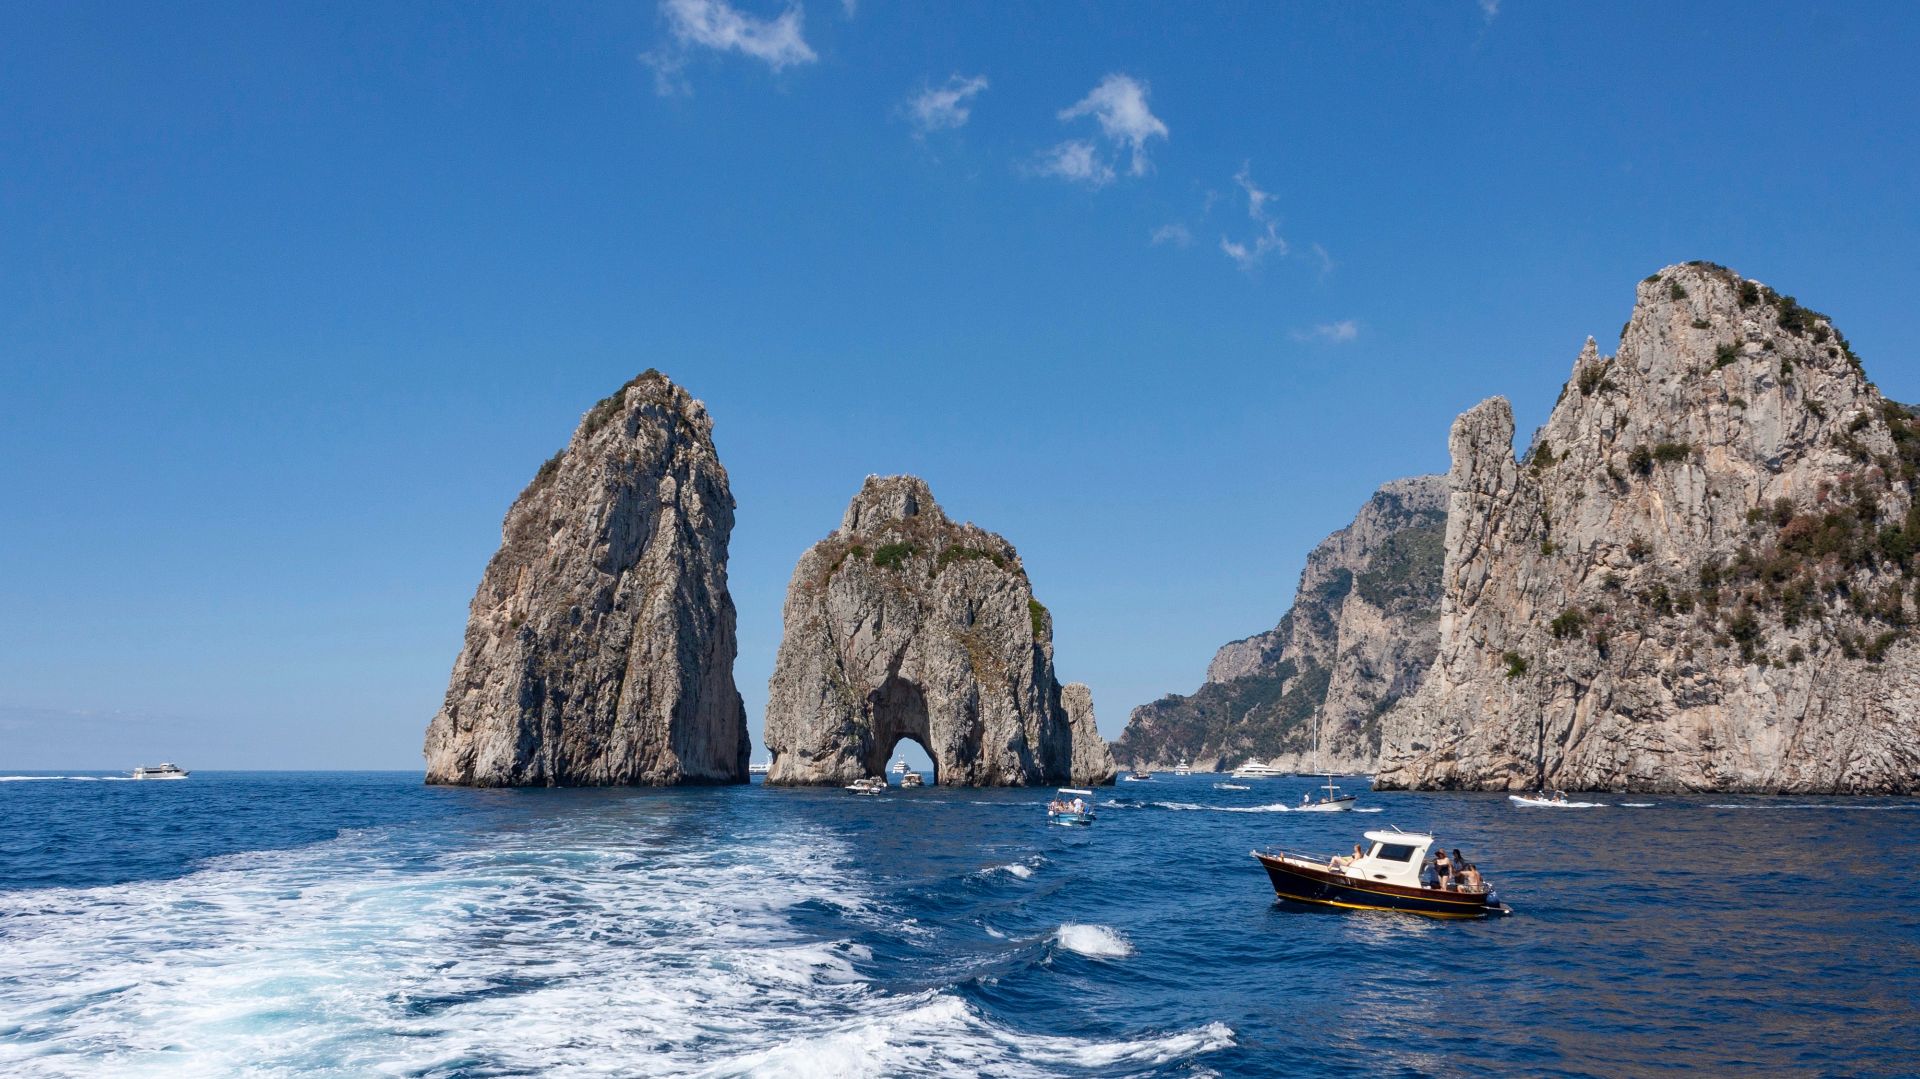 Capri and Amalfi Coast Boat Tour